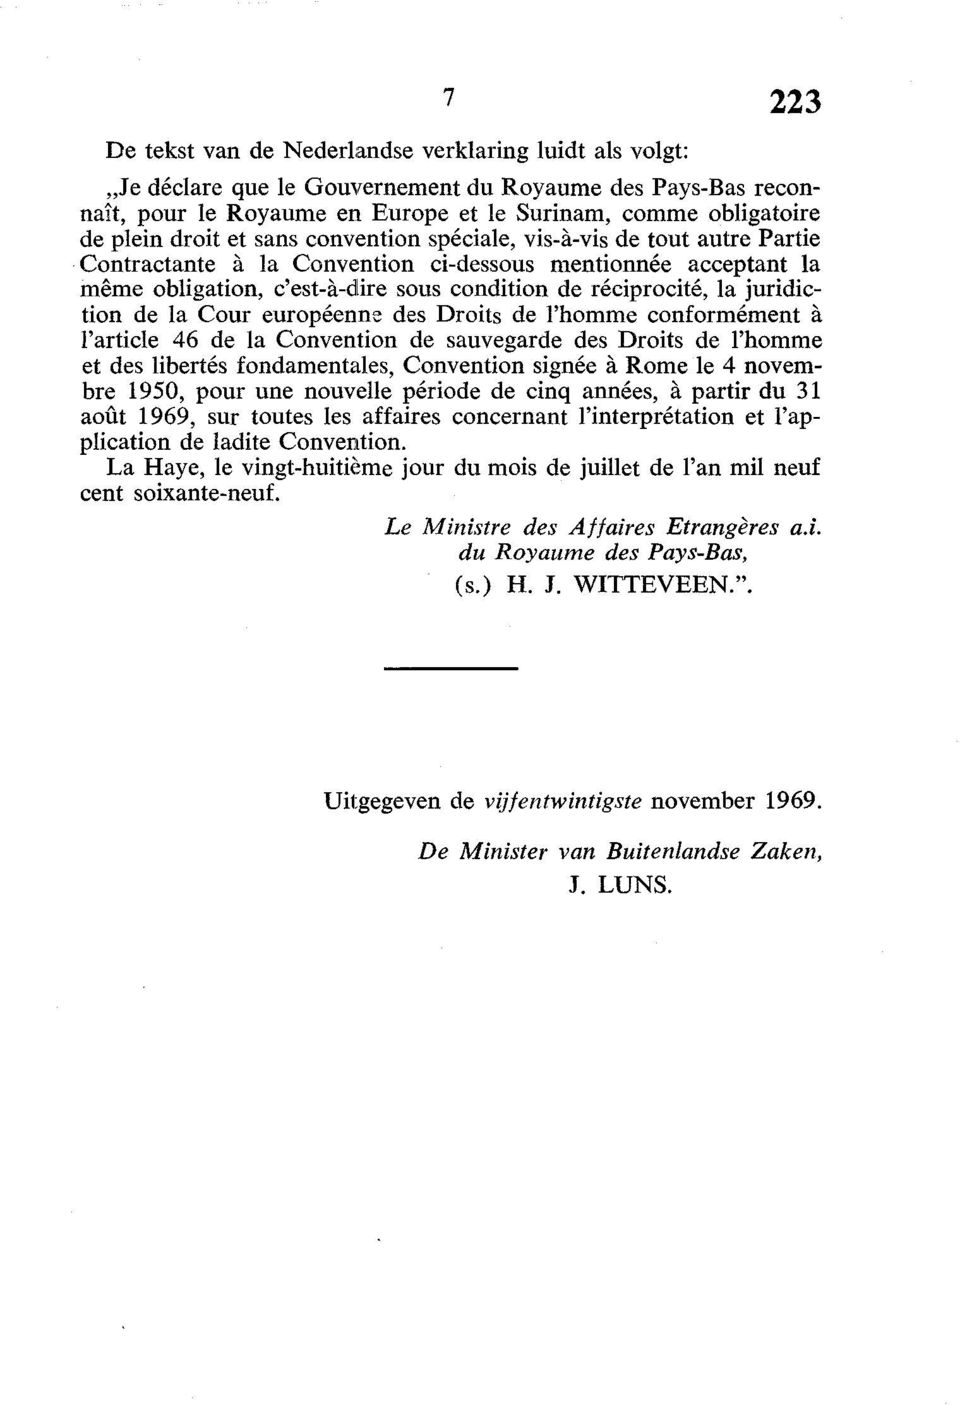 la Cour européenne des Droits de l'homme conformément à l'article 46 de la Convention de sauvegarde des Droits de l'homme et des libertés fondamentales, Convention signée à Rome le 4 novembre 1950,